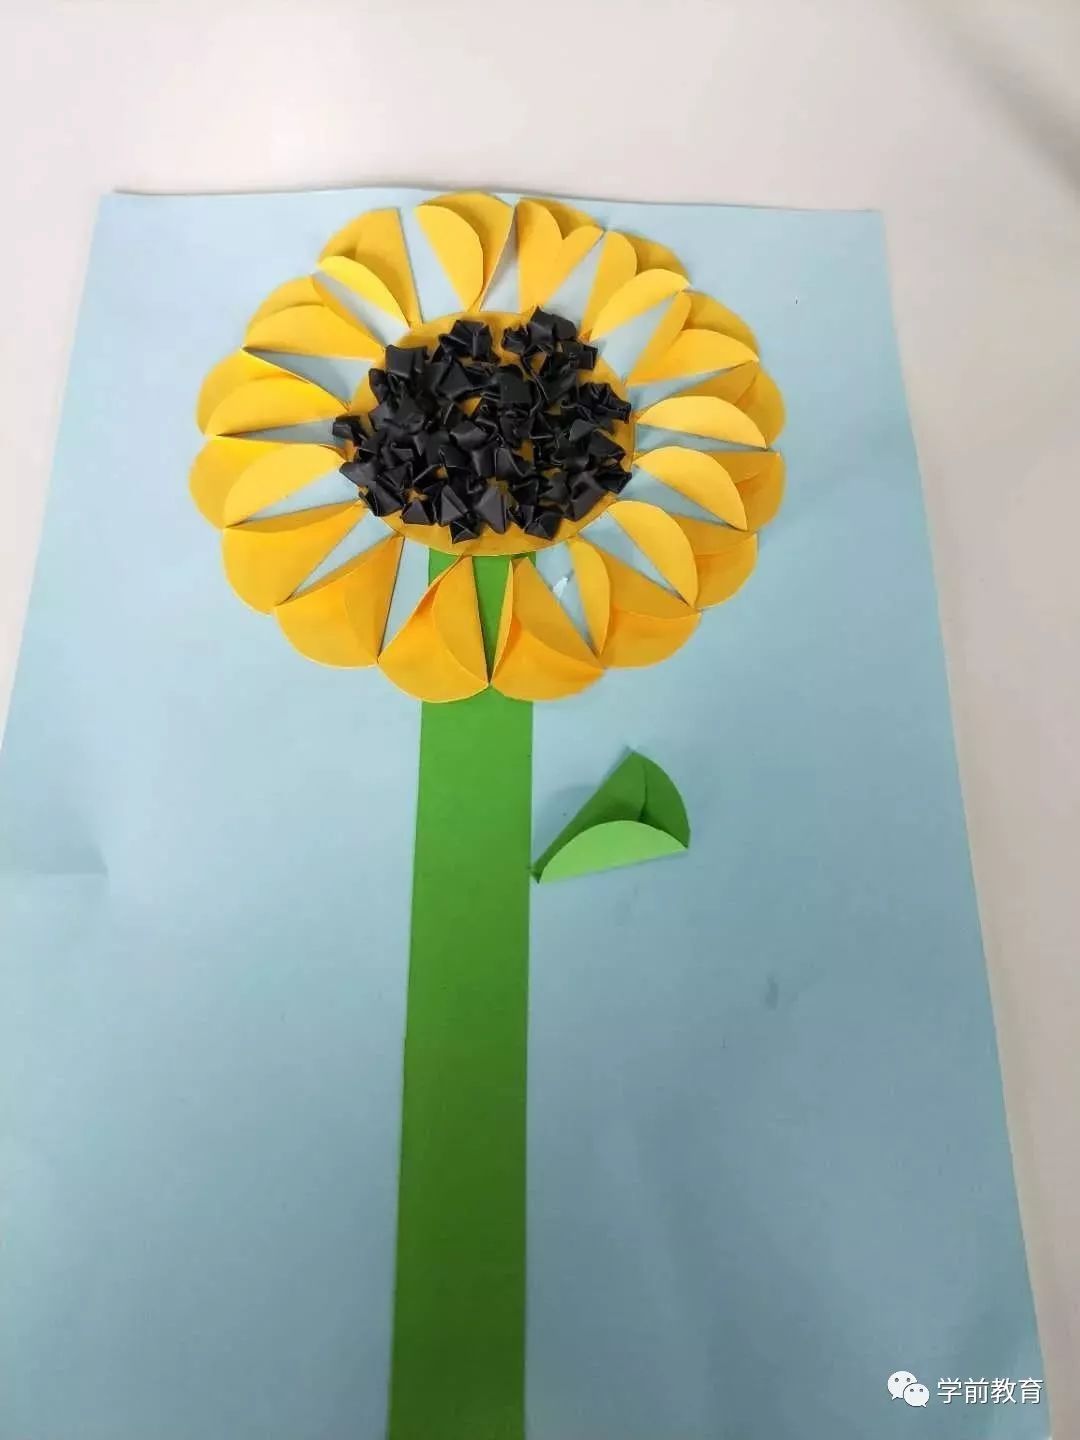 【手工】创意剪纸拼贴向日葵,金灿灿哦